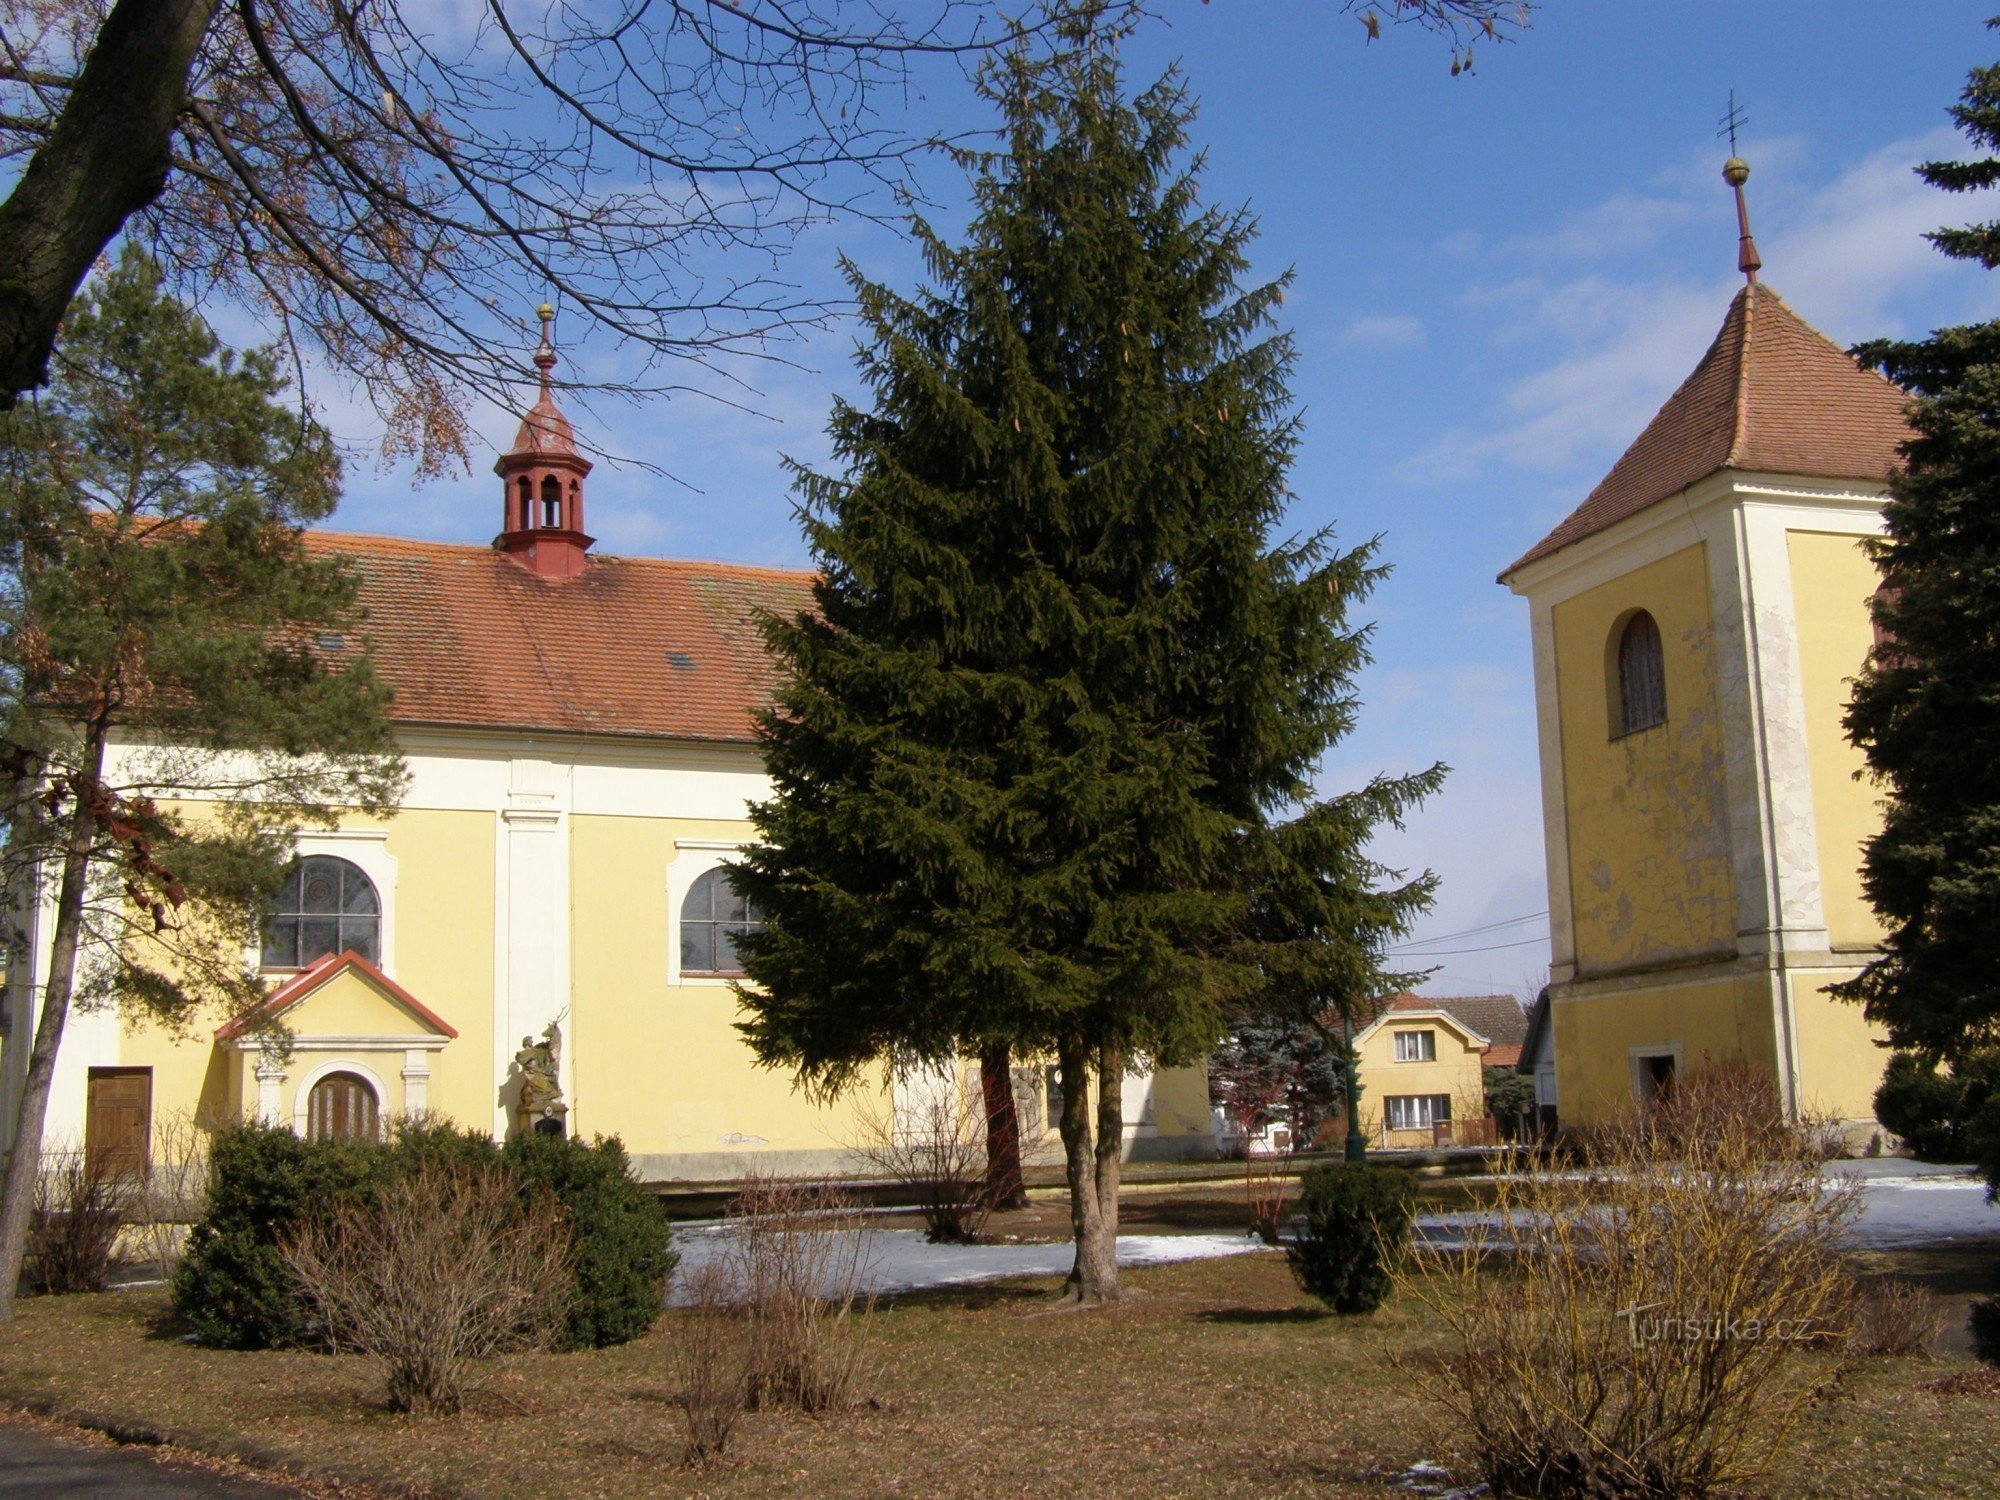 Ловчіце – церква св. Варфоломія з дзвіницею